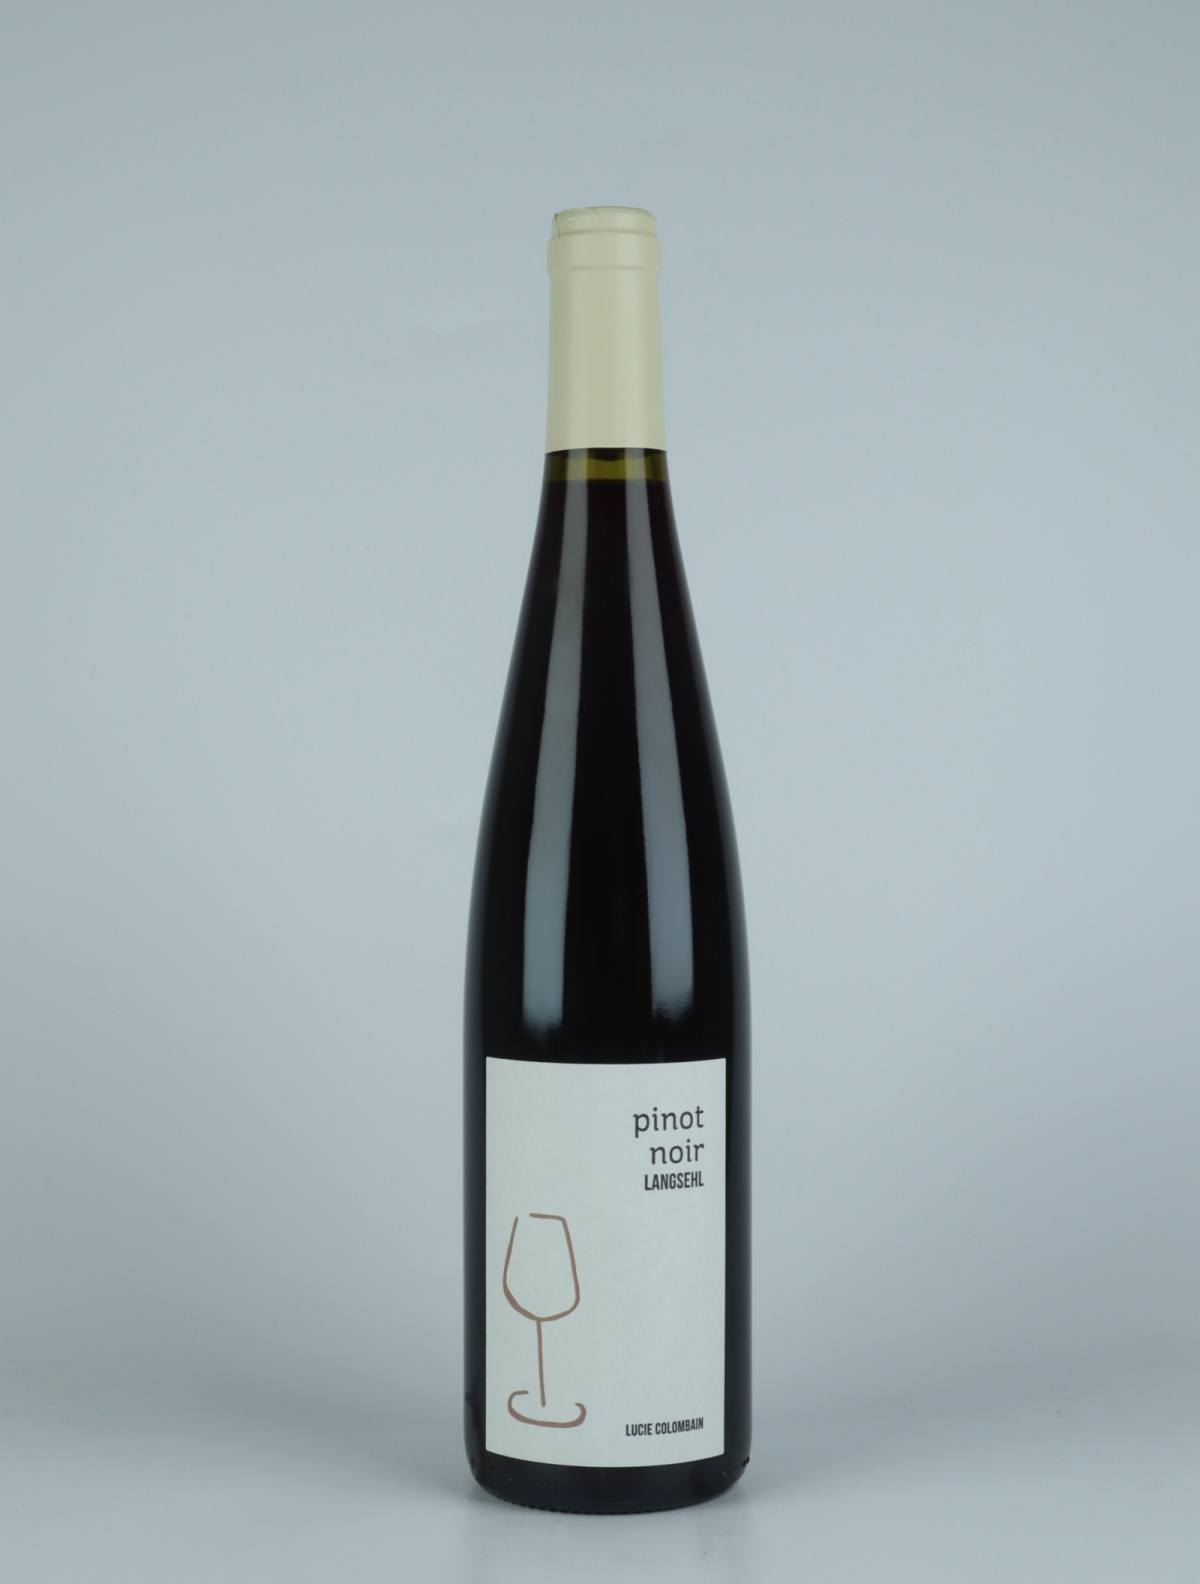 En flaske 2020 Pinot Noir - Langsehl Rødvin fra Lucie Colombain, Alsace i Frankrig